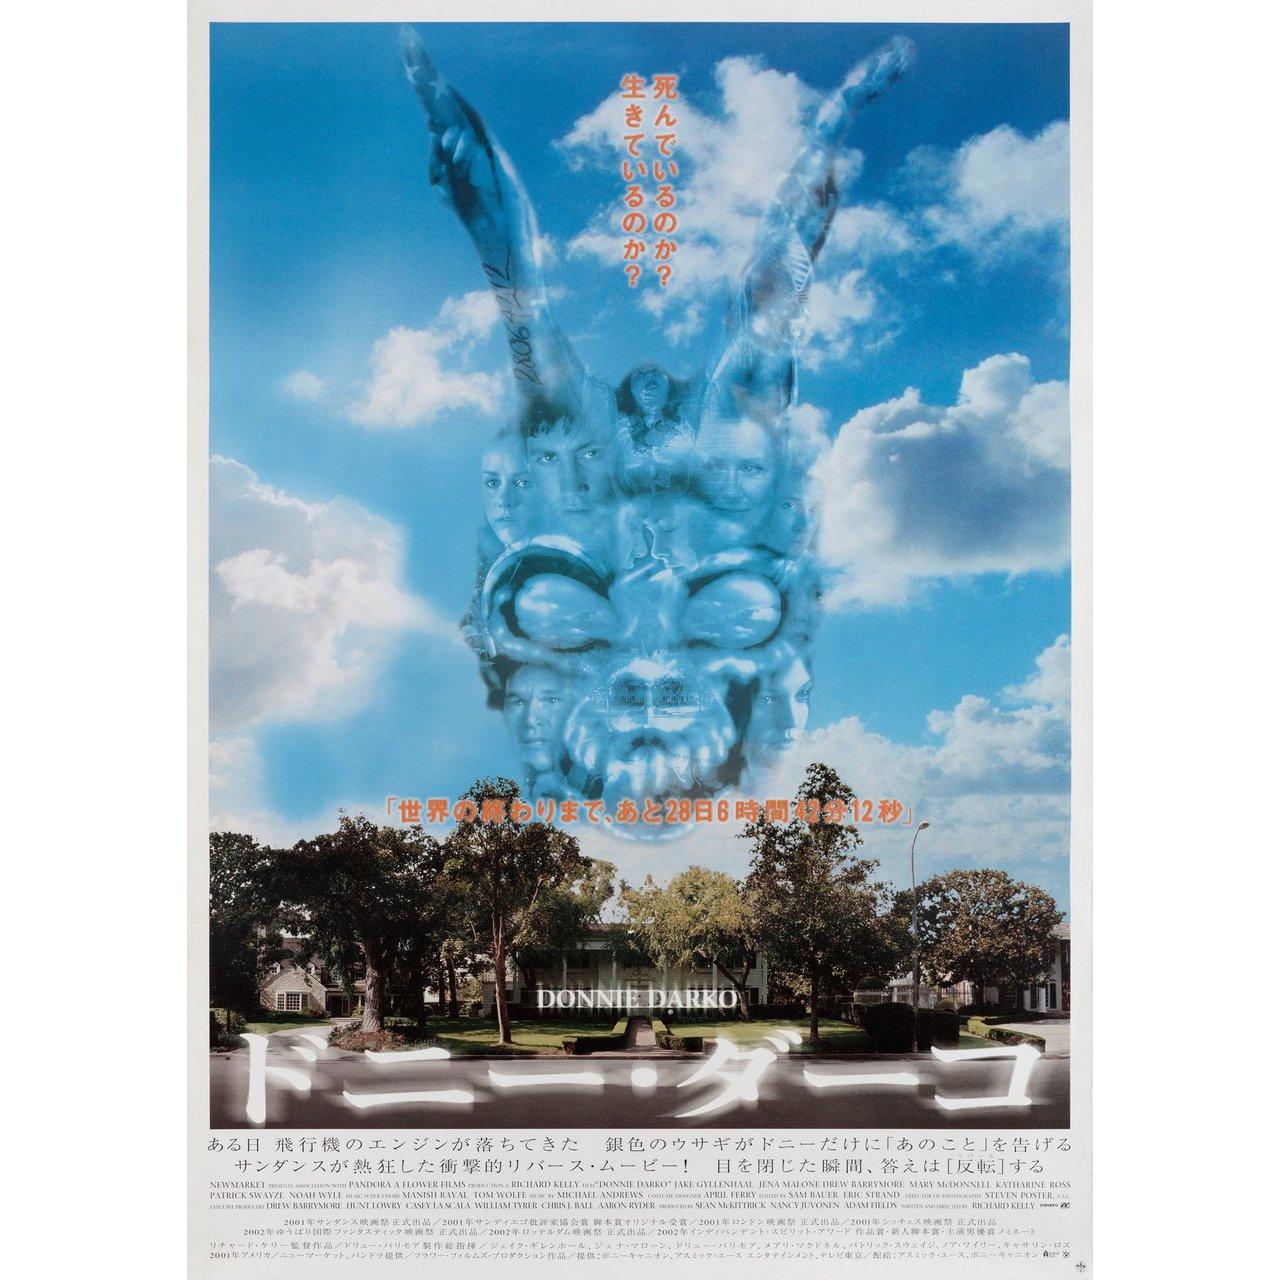 Affiche originale japonaise B2 de 2002 pour le film Donnie Darko réalisé par Richard Kelly avec Jake Gyllenhaal / Holmes Osborne / Maggie Gyllenhaal / Daveigh Chase. Très bon état, roulé. Veuillez noter que la taille est indiquée en pouces et que la